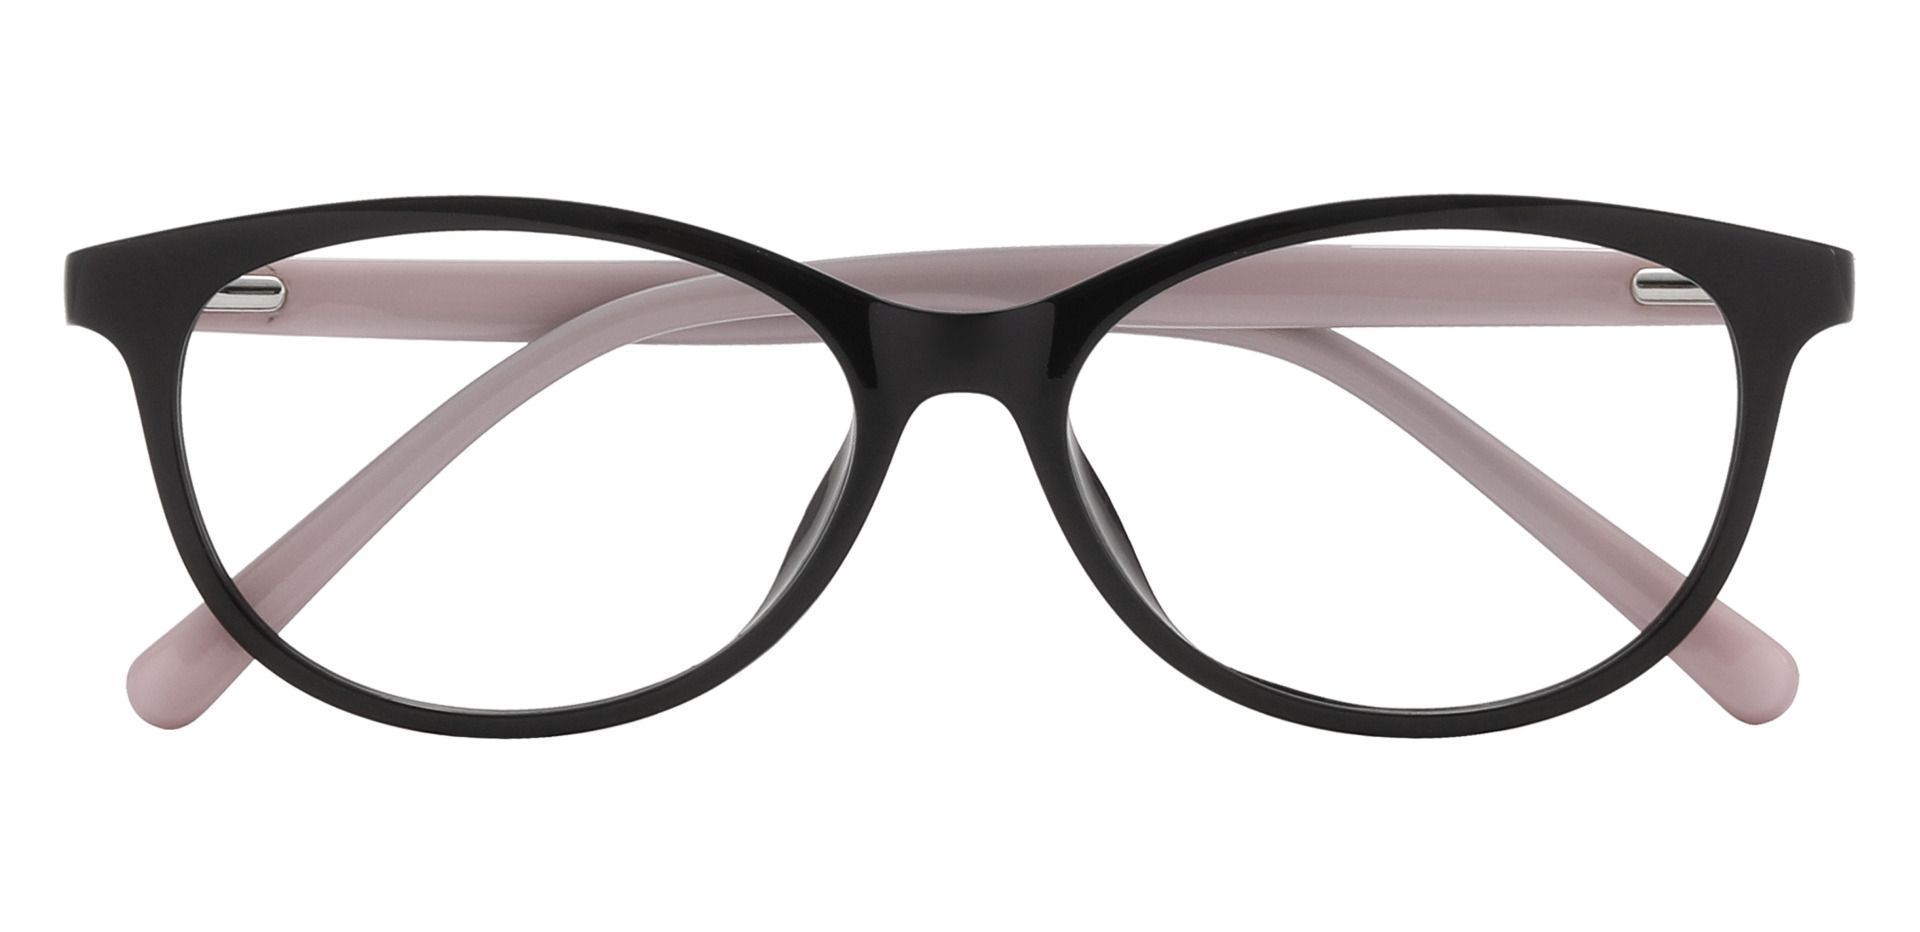 Adora Oval Prescription Glasses - Black